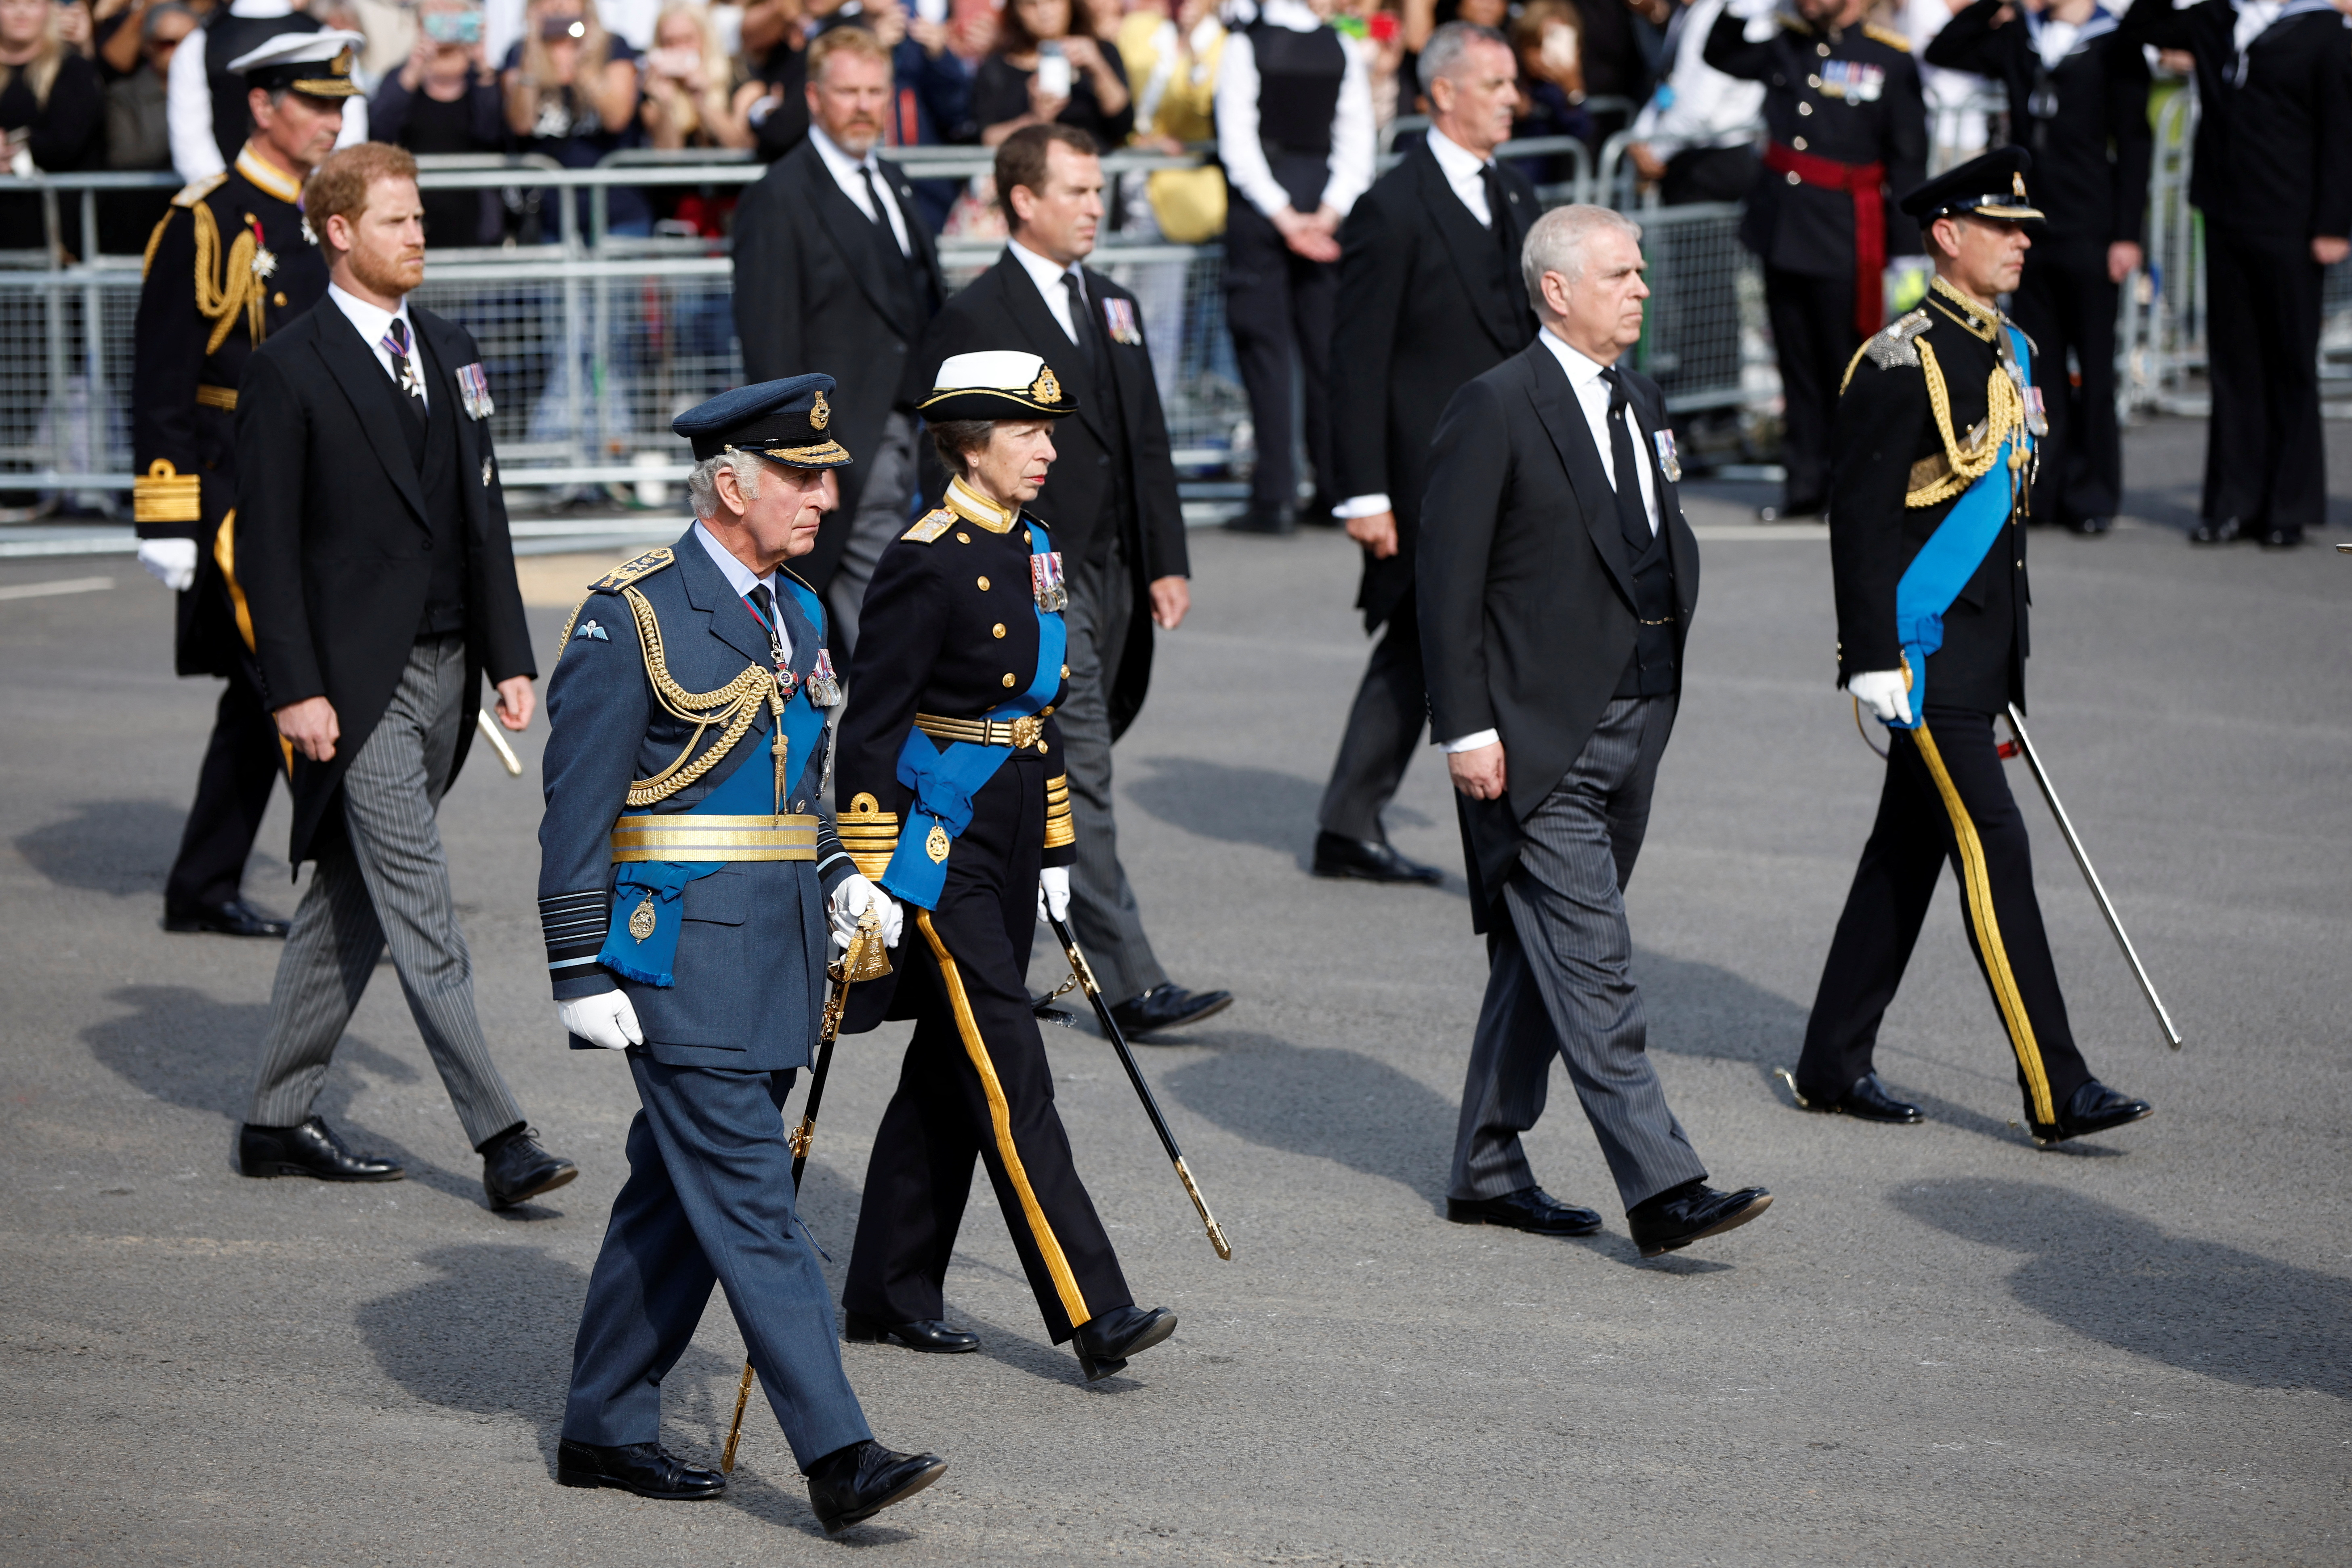 El rey Carlos, Ana, la princesa real, el príncipe Andrés y el príncipe Harry de Gran Bretaña marchan durante una procesión en la que el ataúd de la reina Isabel de Gran Bretaña es transportado desde el Palacio de Buckingham a las Casas del Parlamento